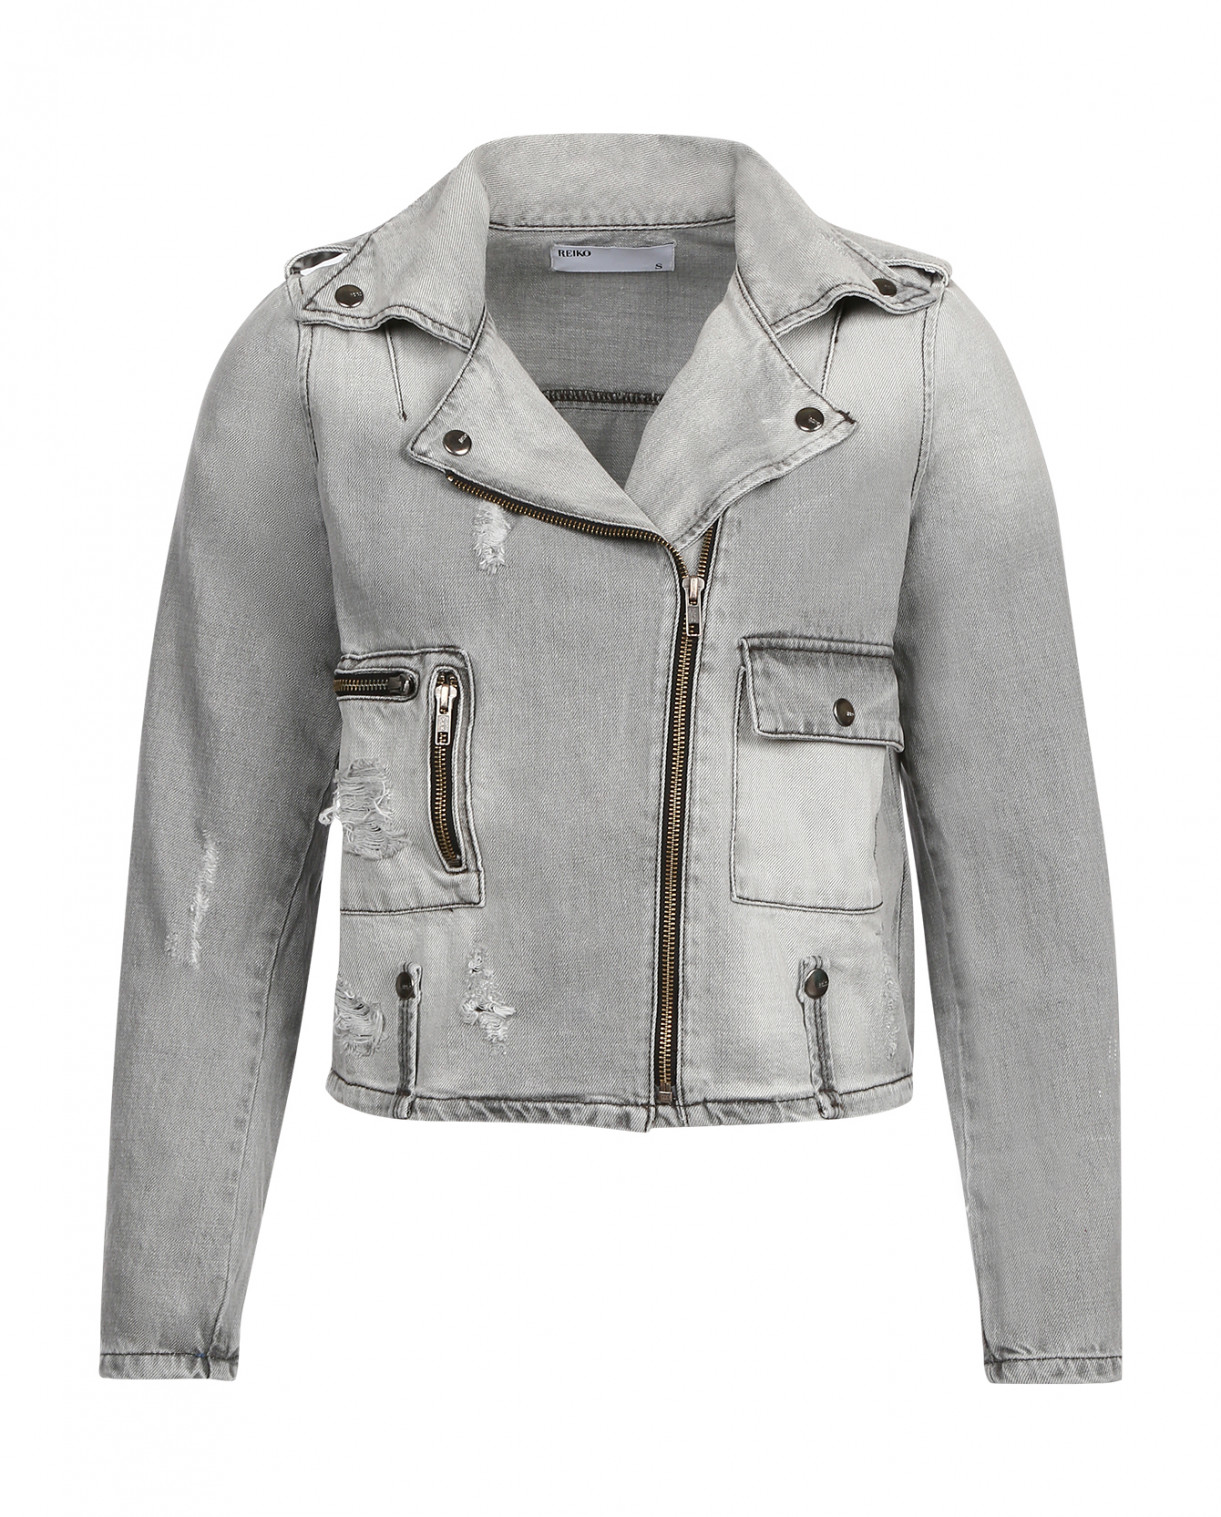 Джинсовая куртка-косуха Reiko  –  Общий вид  – Цвет:  Серый